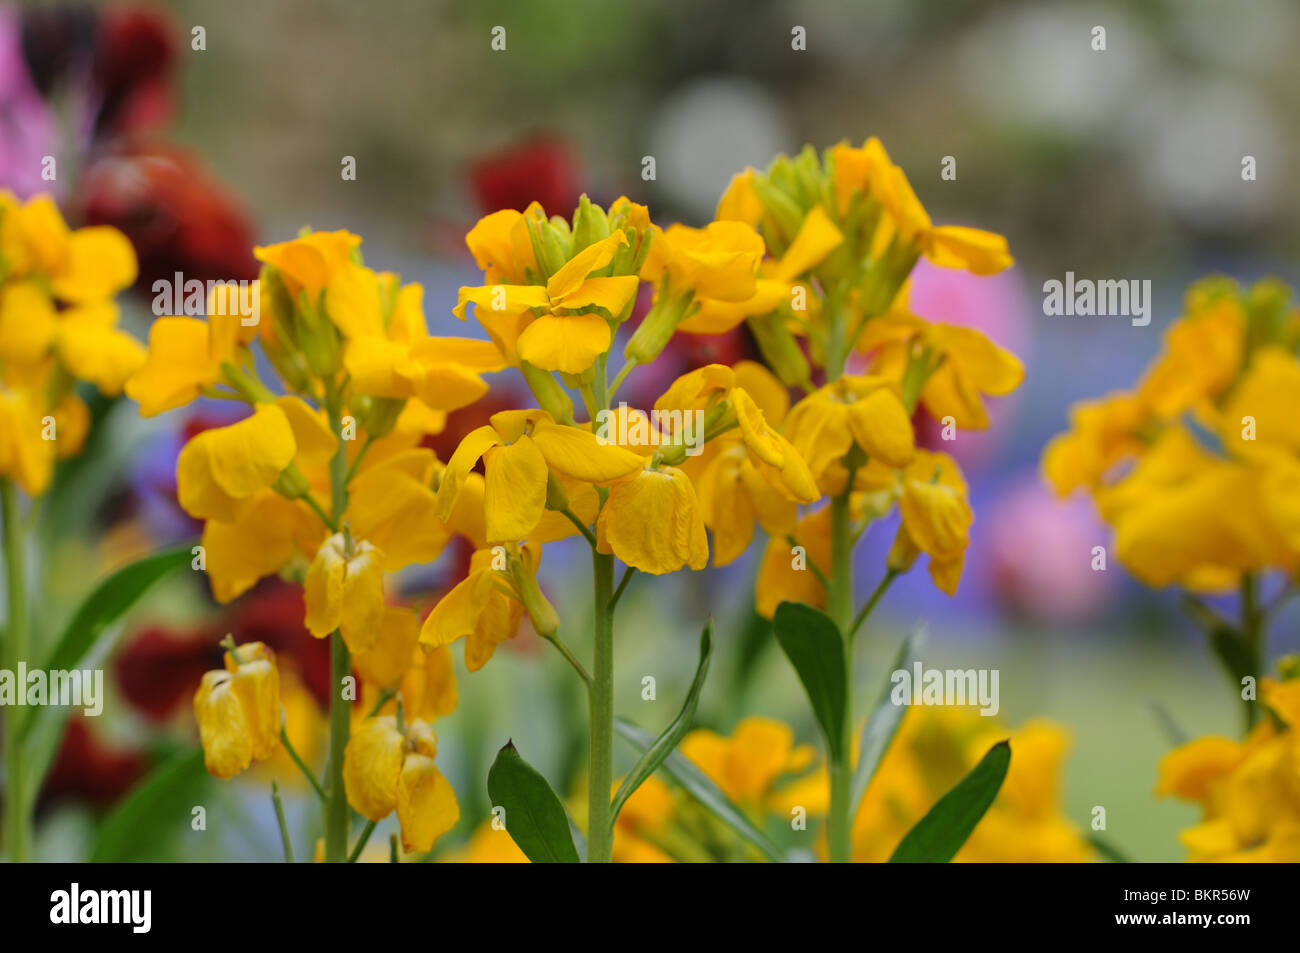 Yellow wallflowers (Erysimum) Stock Photo